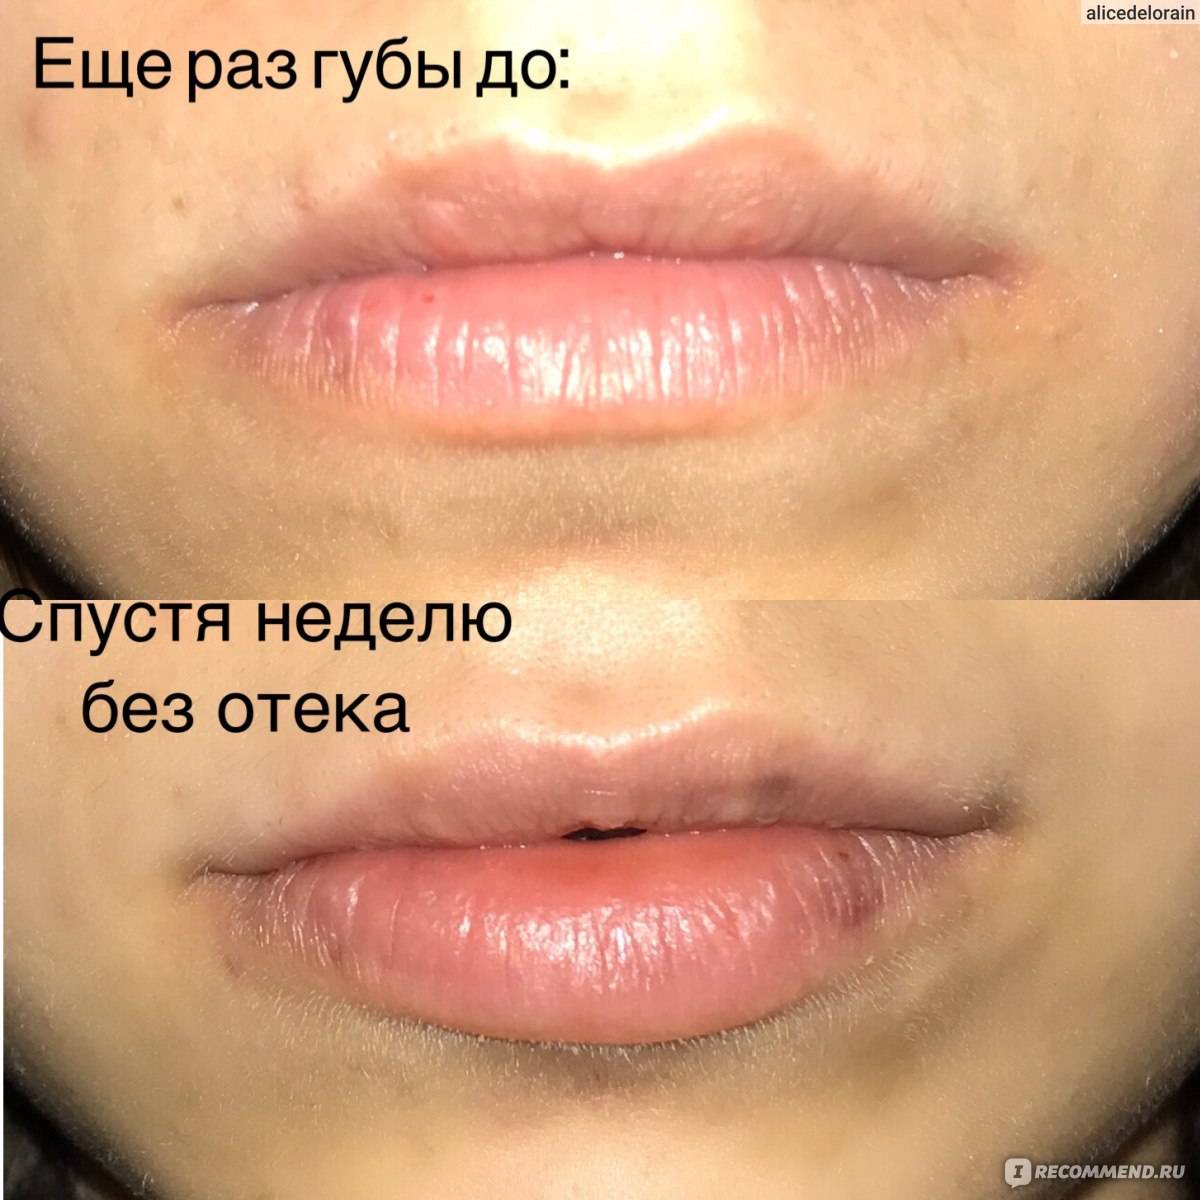 Каким должен быть уход за губами после инъекций гиалуроновой кислоты?